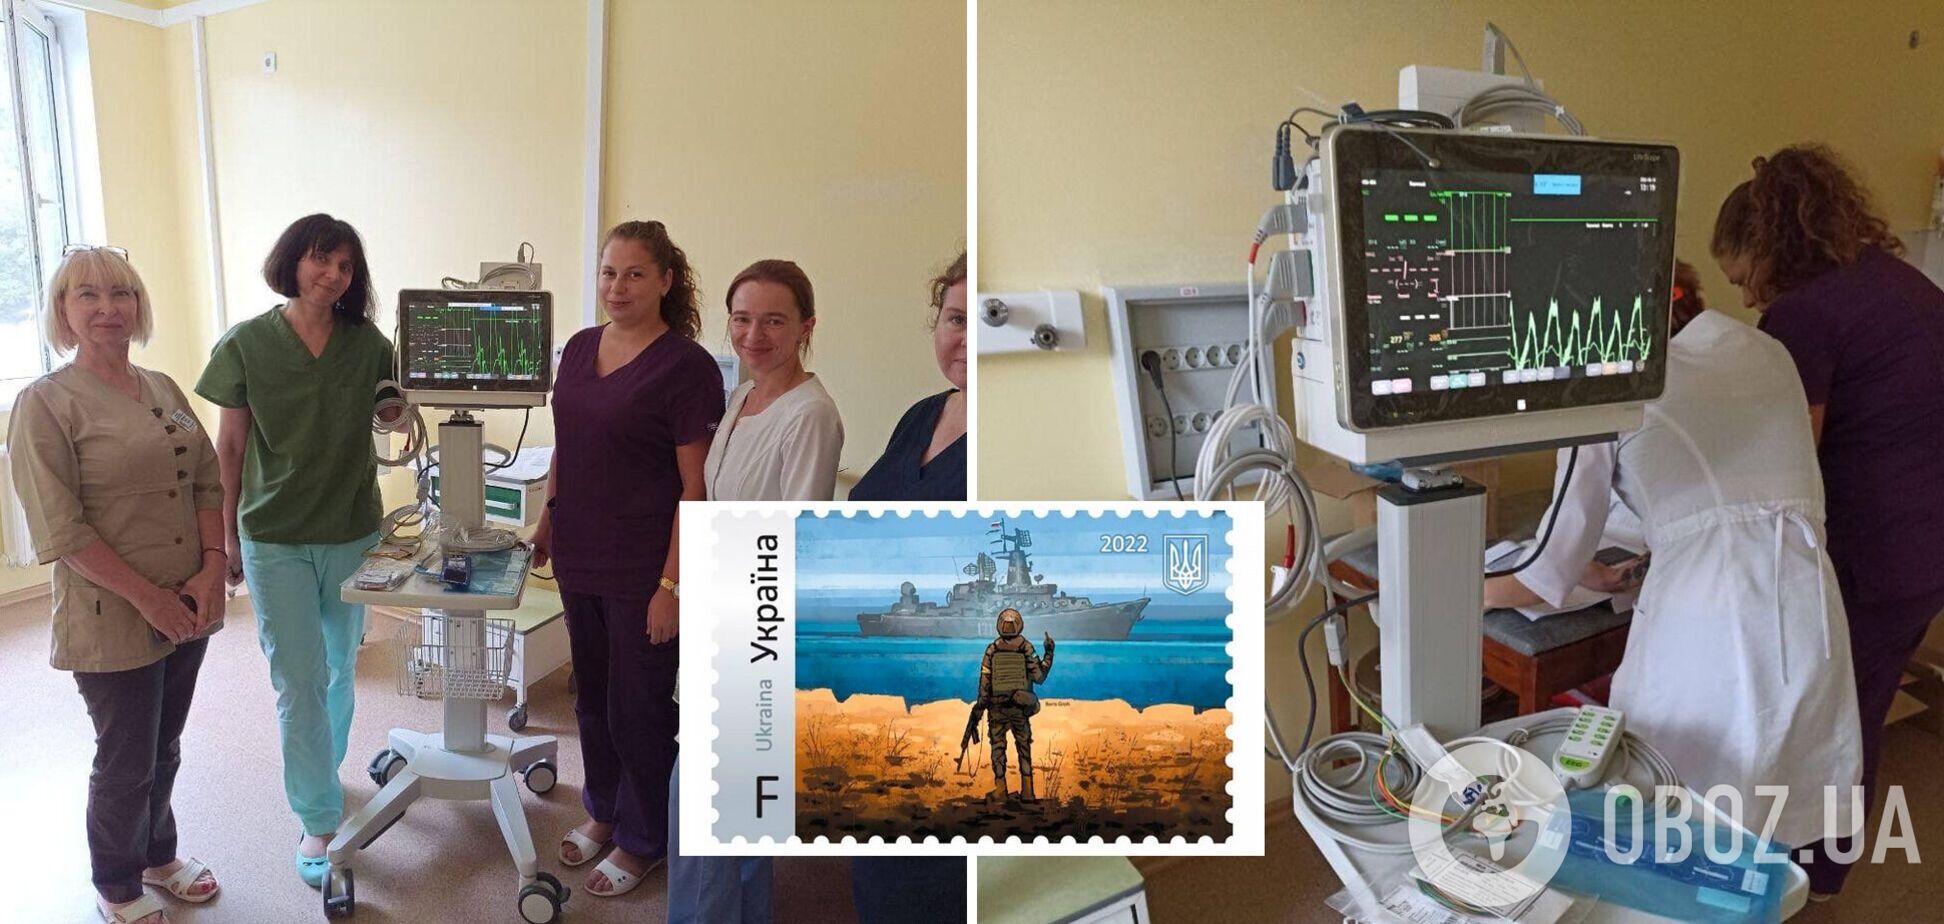 Електроенцефалограф, на який було оголошено збір коштів, уже у дитячій  лікарні Миколаєва